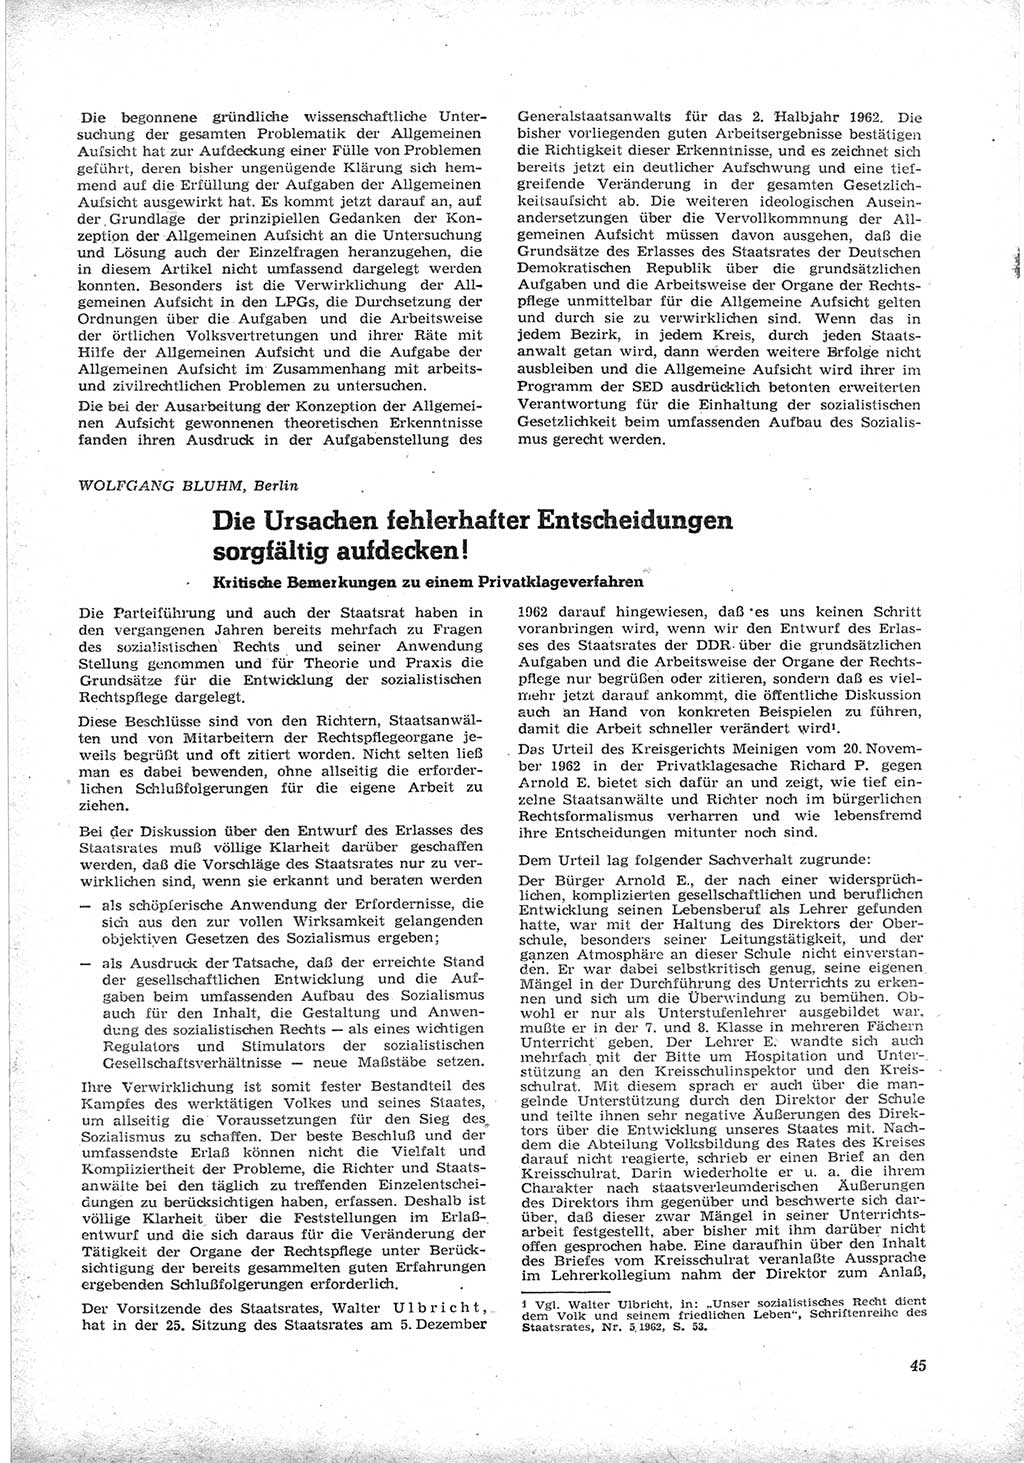 Neue Justiz (NJ), Zeitschrift für Recht und Rechtswissenschaft [Deutsche Demokratische Republik (DDR)], 17. Jahrgang 1963, Seite 45 (NJ DDR 1963, S. 45)